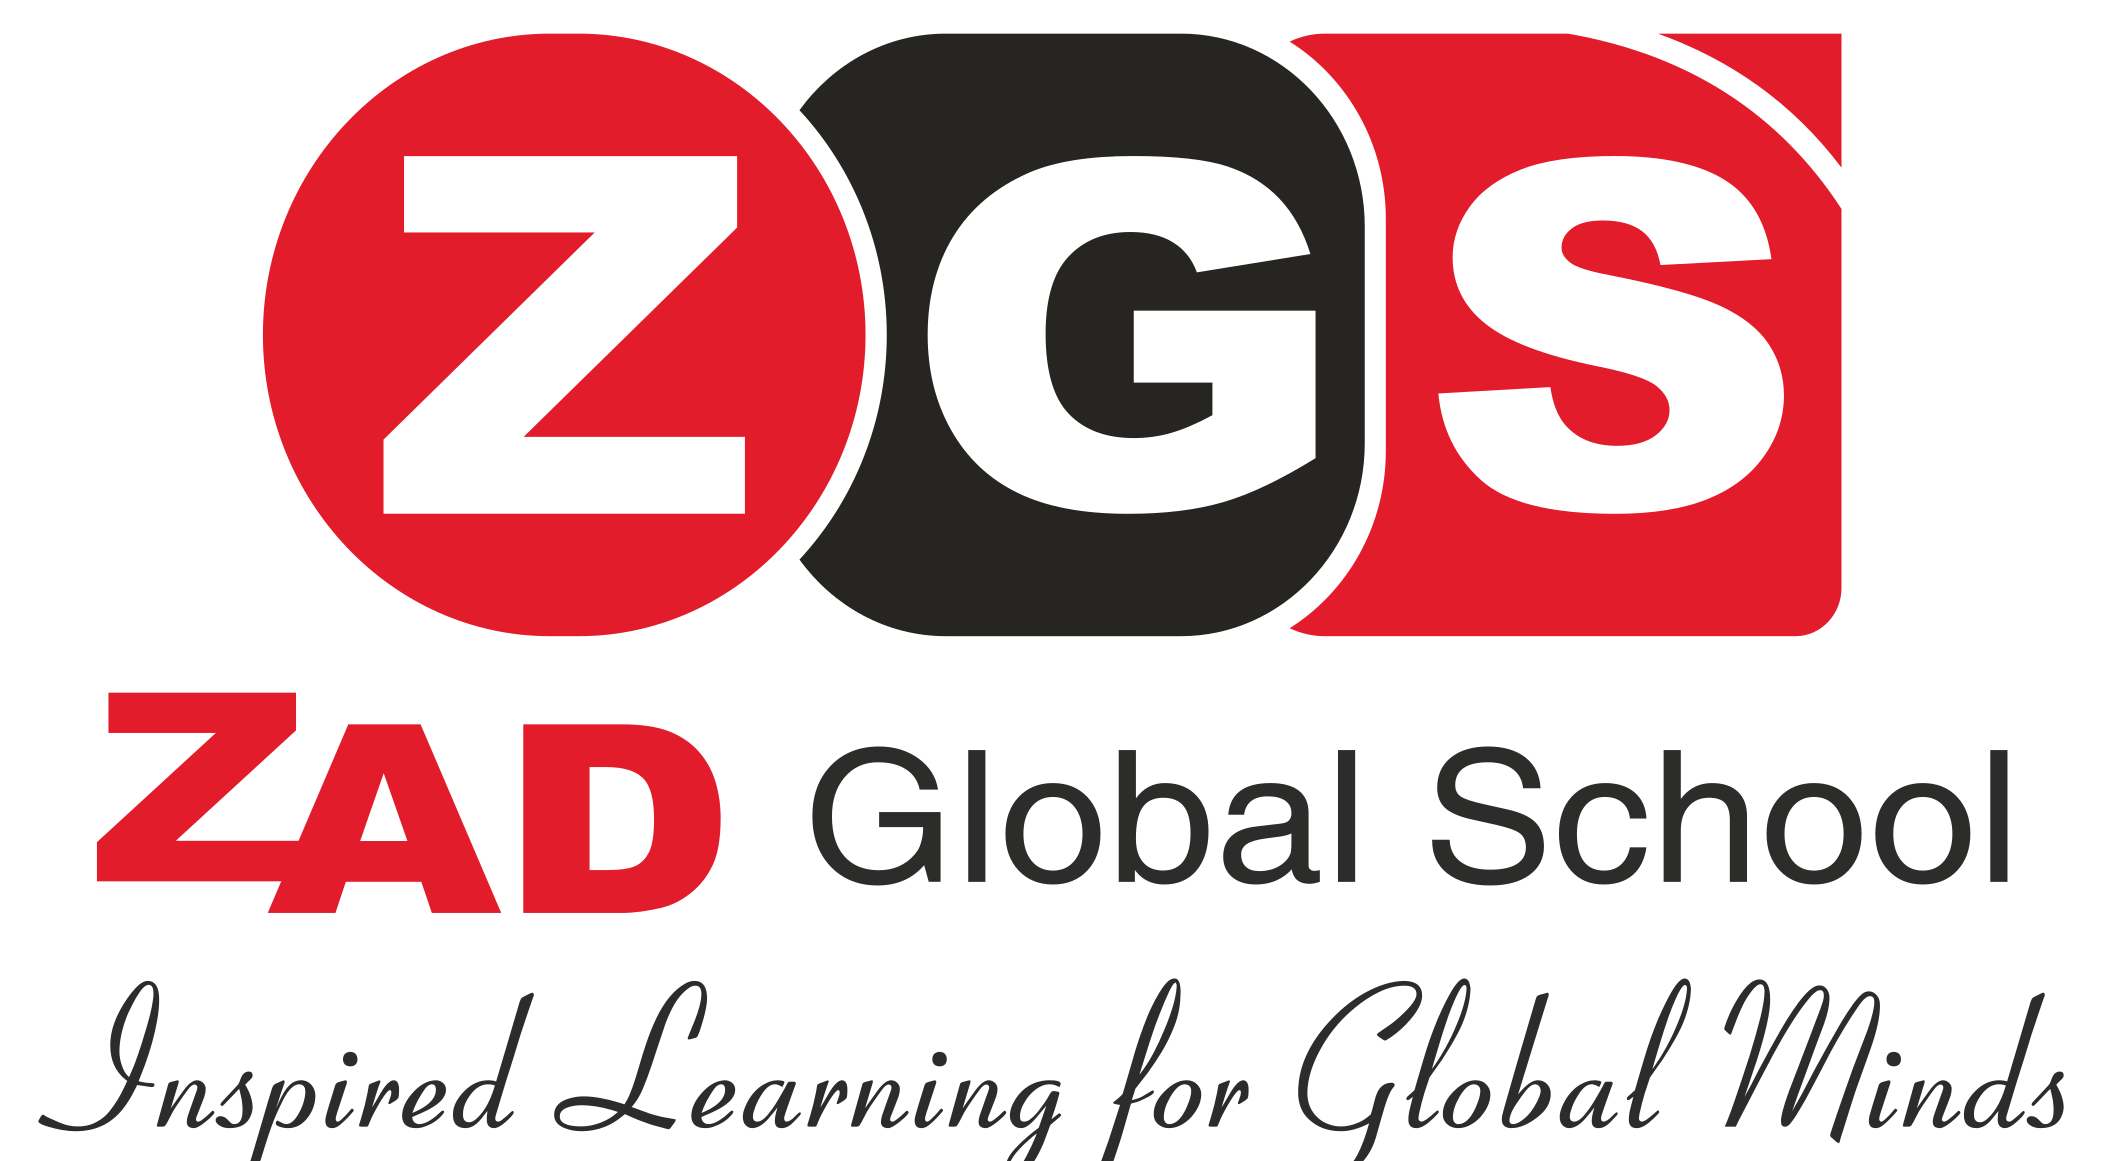 ZAD Global School